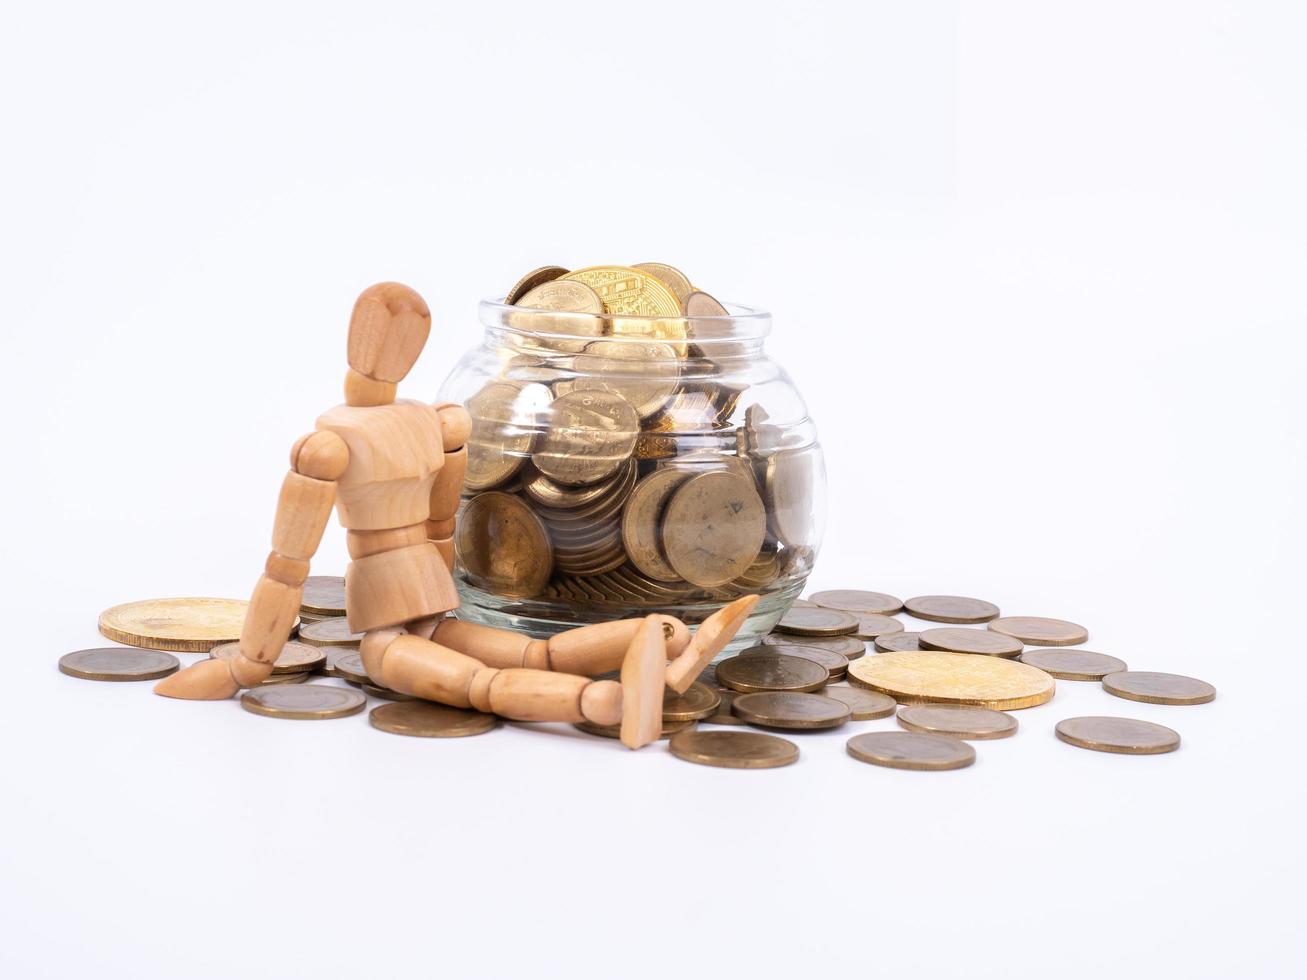 miniatuur houten figuur zit op gemorste pot met munten. bedrijfsconcept met munten. foto